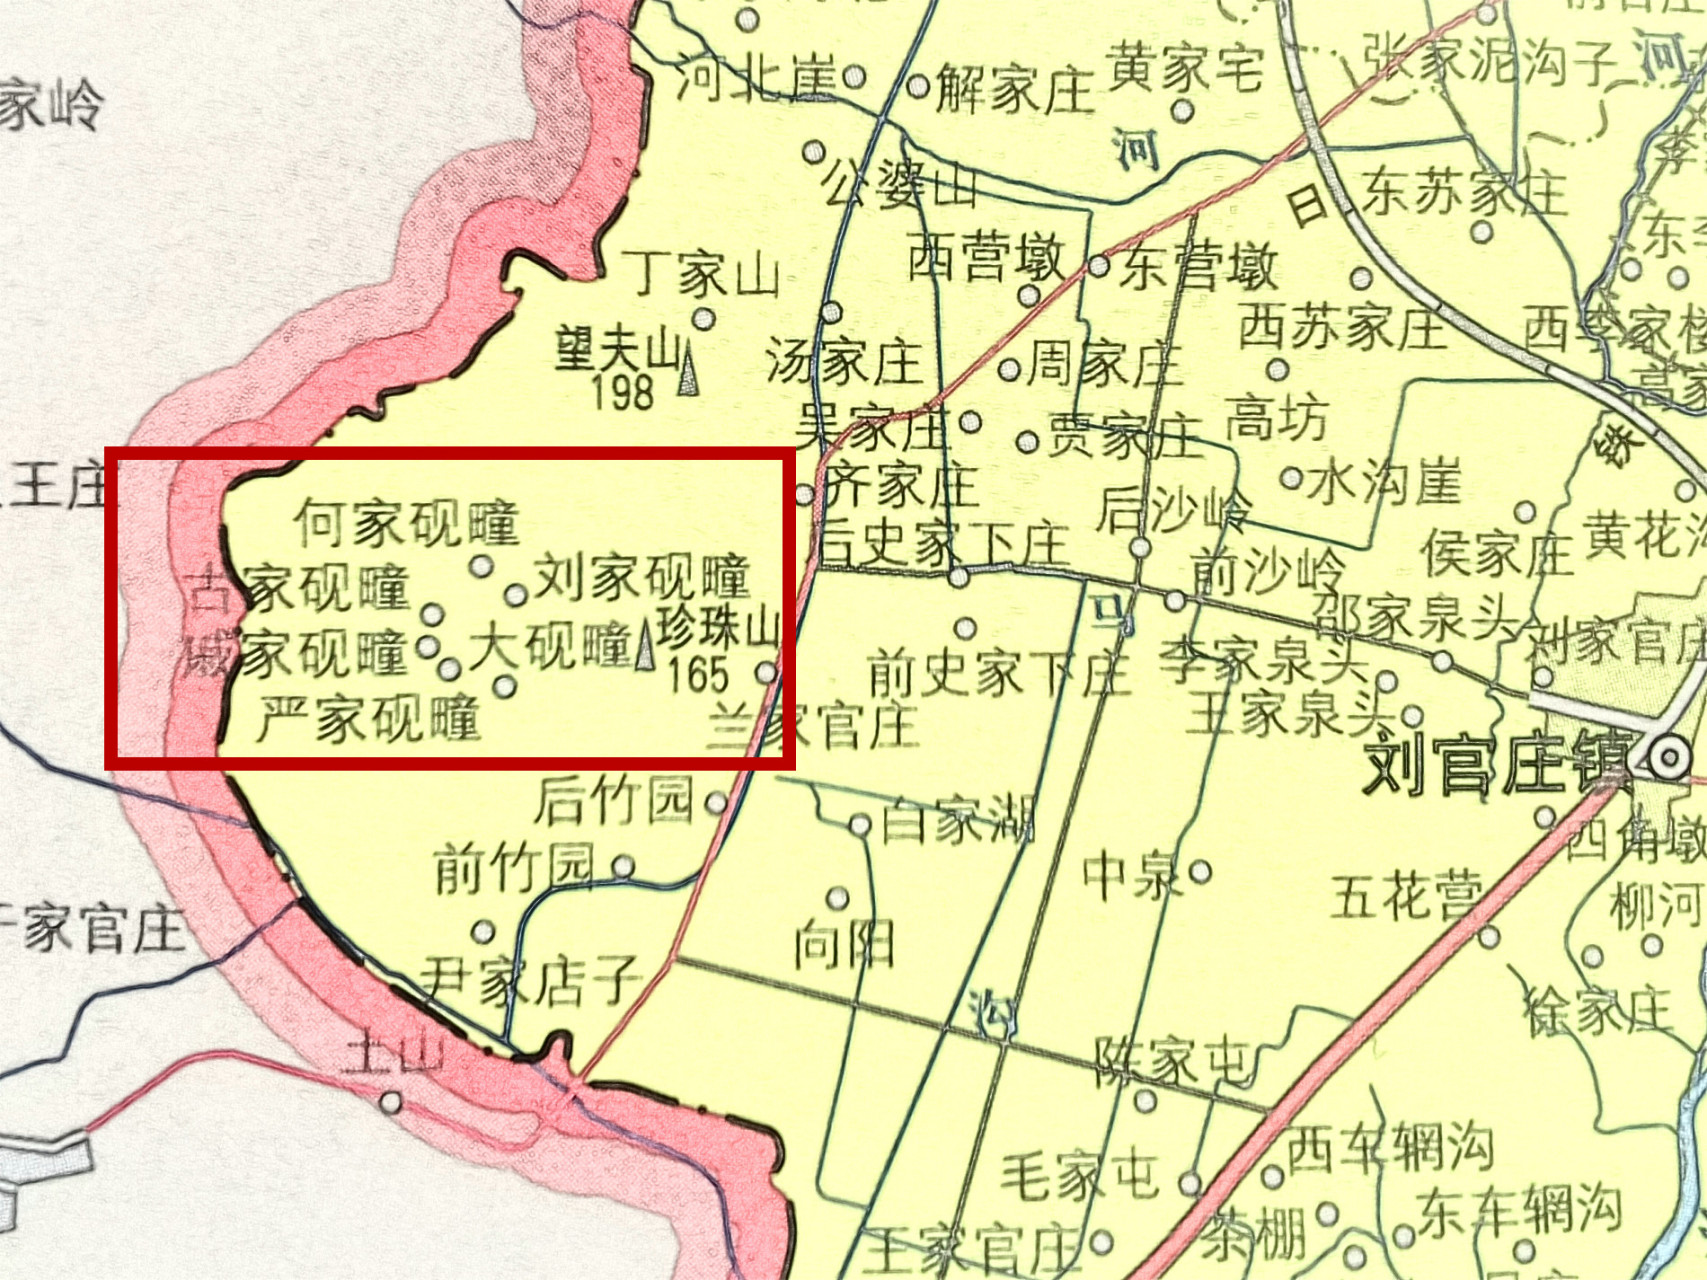 地名文化:莒县刘官庄镇有好多个"砚疃"村 在日照市莒县刘官庄镇的西部